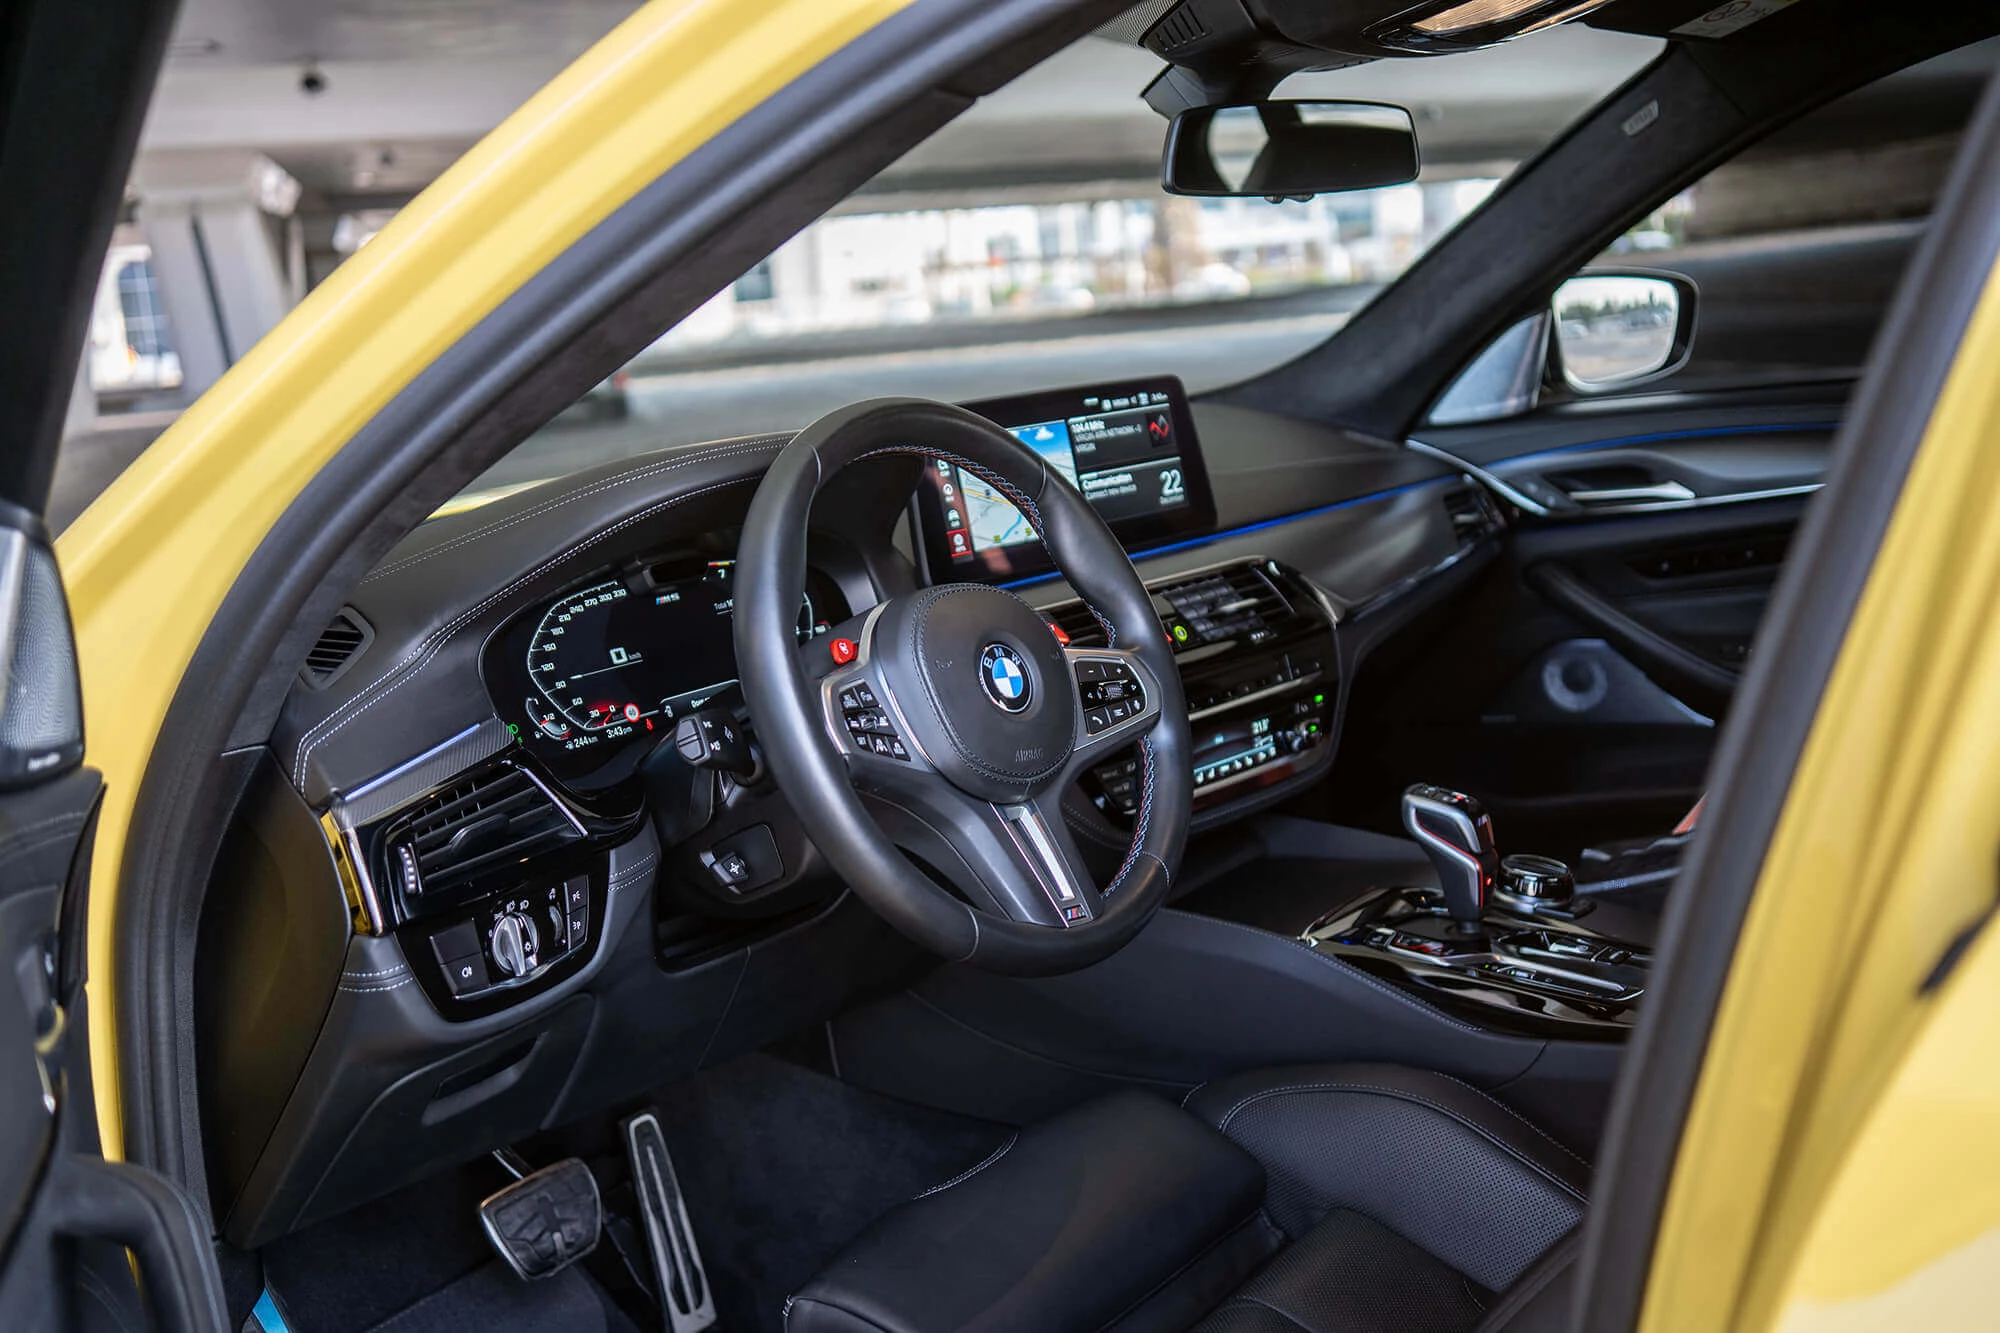 BMW M5 Wettbewerb Gelb